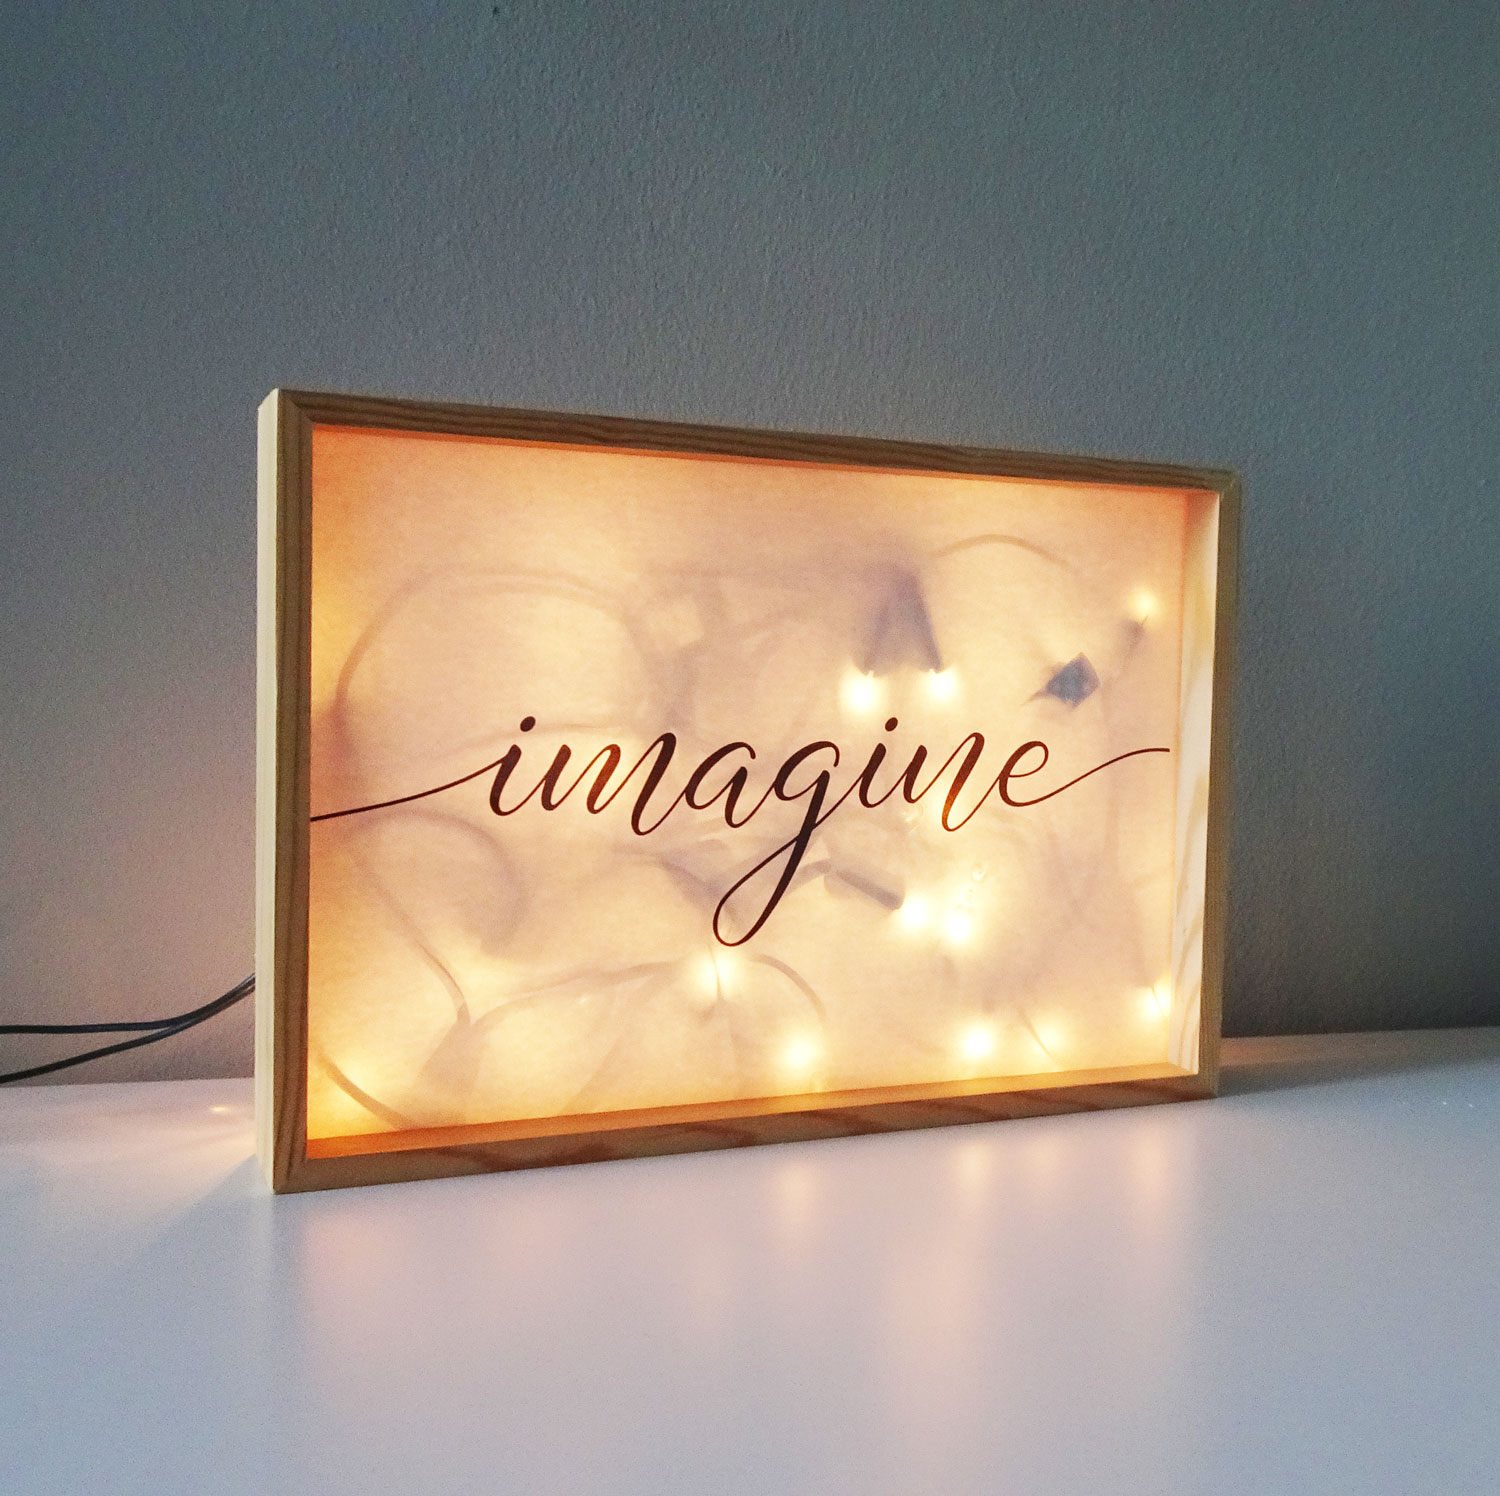 lightbox imagine aan DIY: een sfeervolle lightbox maken met Jinske Verpalen!